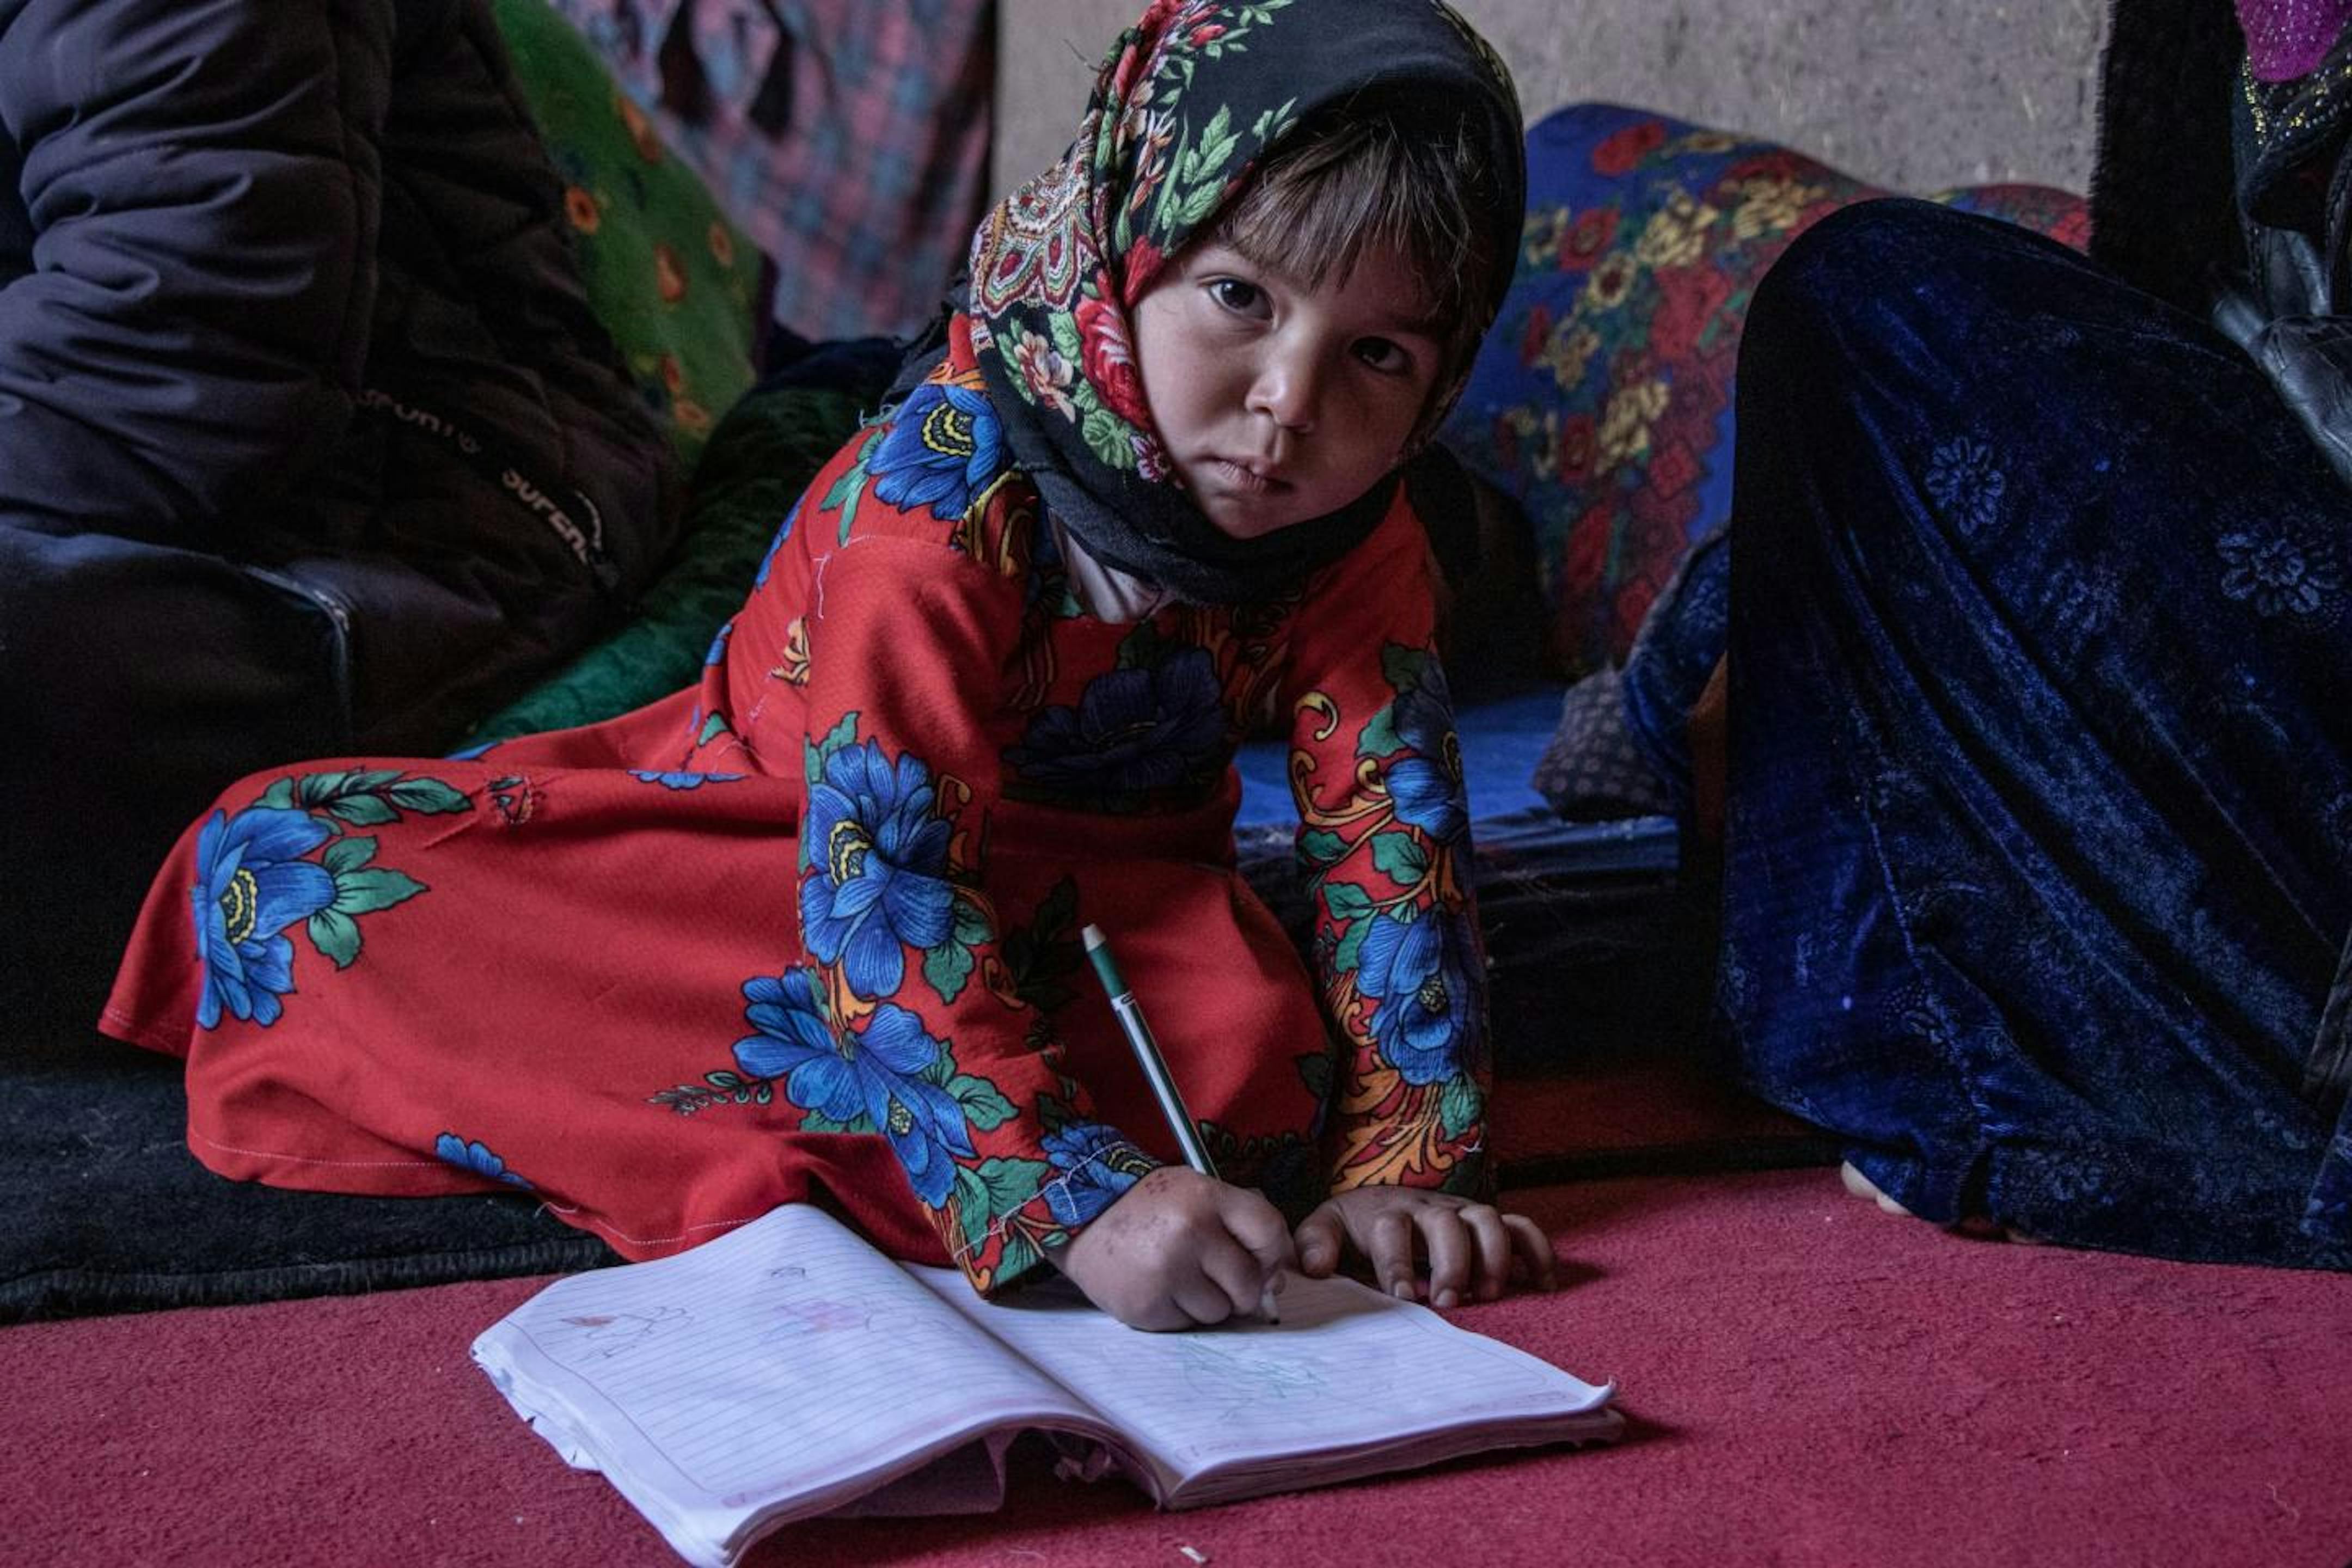 La piccola Farhana era destinata a diventare una sposa bambina per estinguere il debito dei suoi genitori. L'intervento dell'UNICEF e del Comitato di Protezione di Comunità ha evitato, per il momento, questa violenza